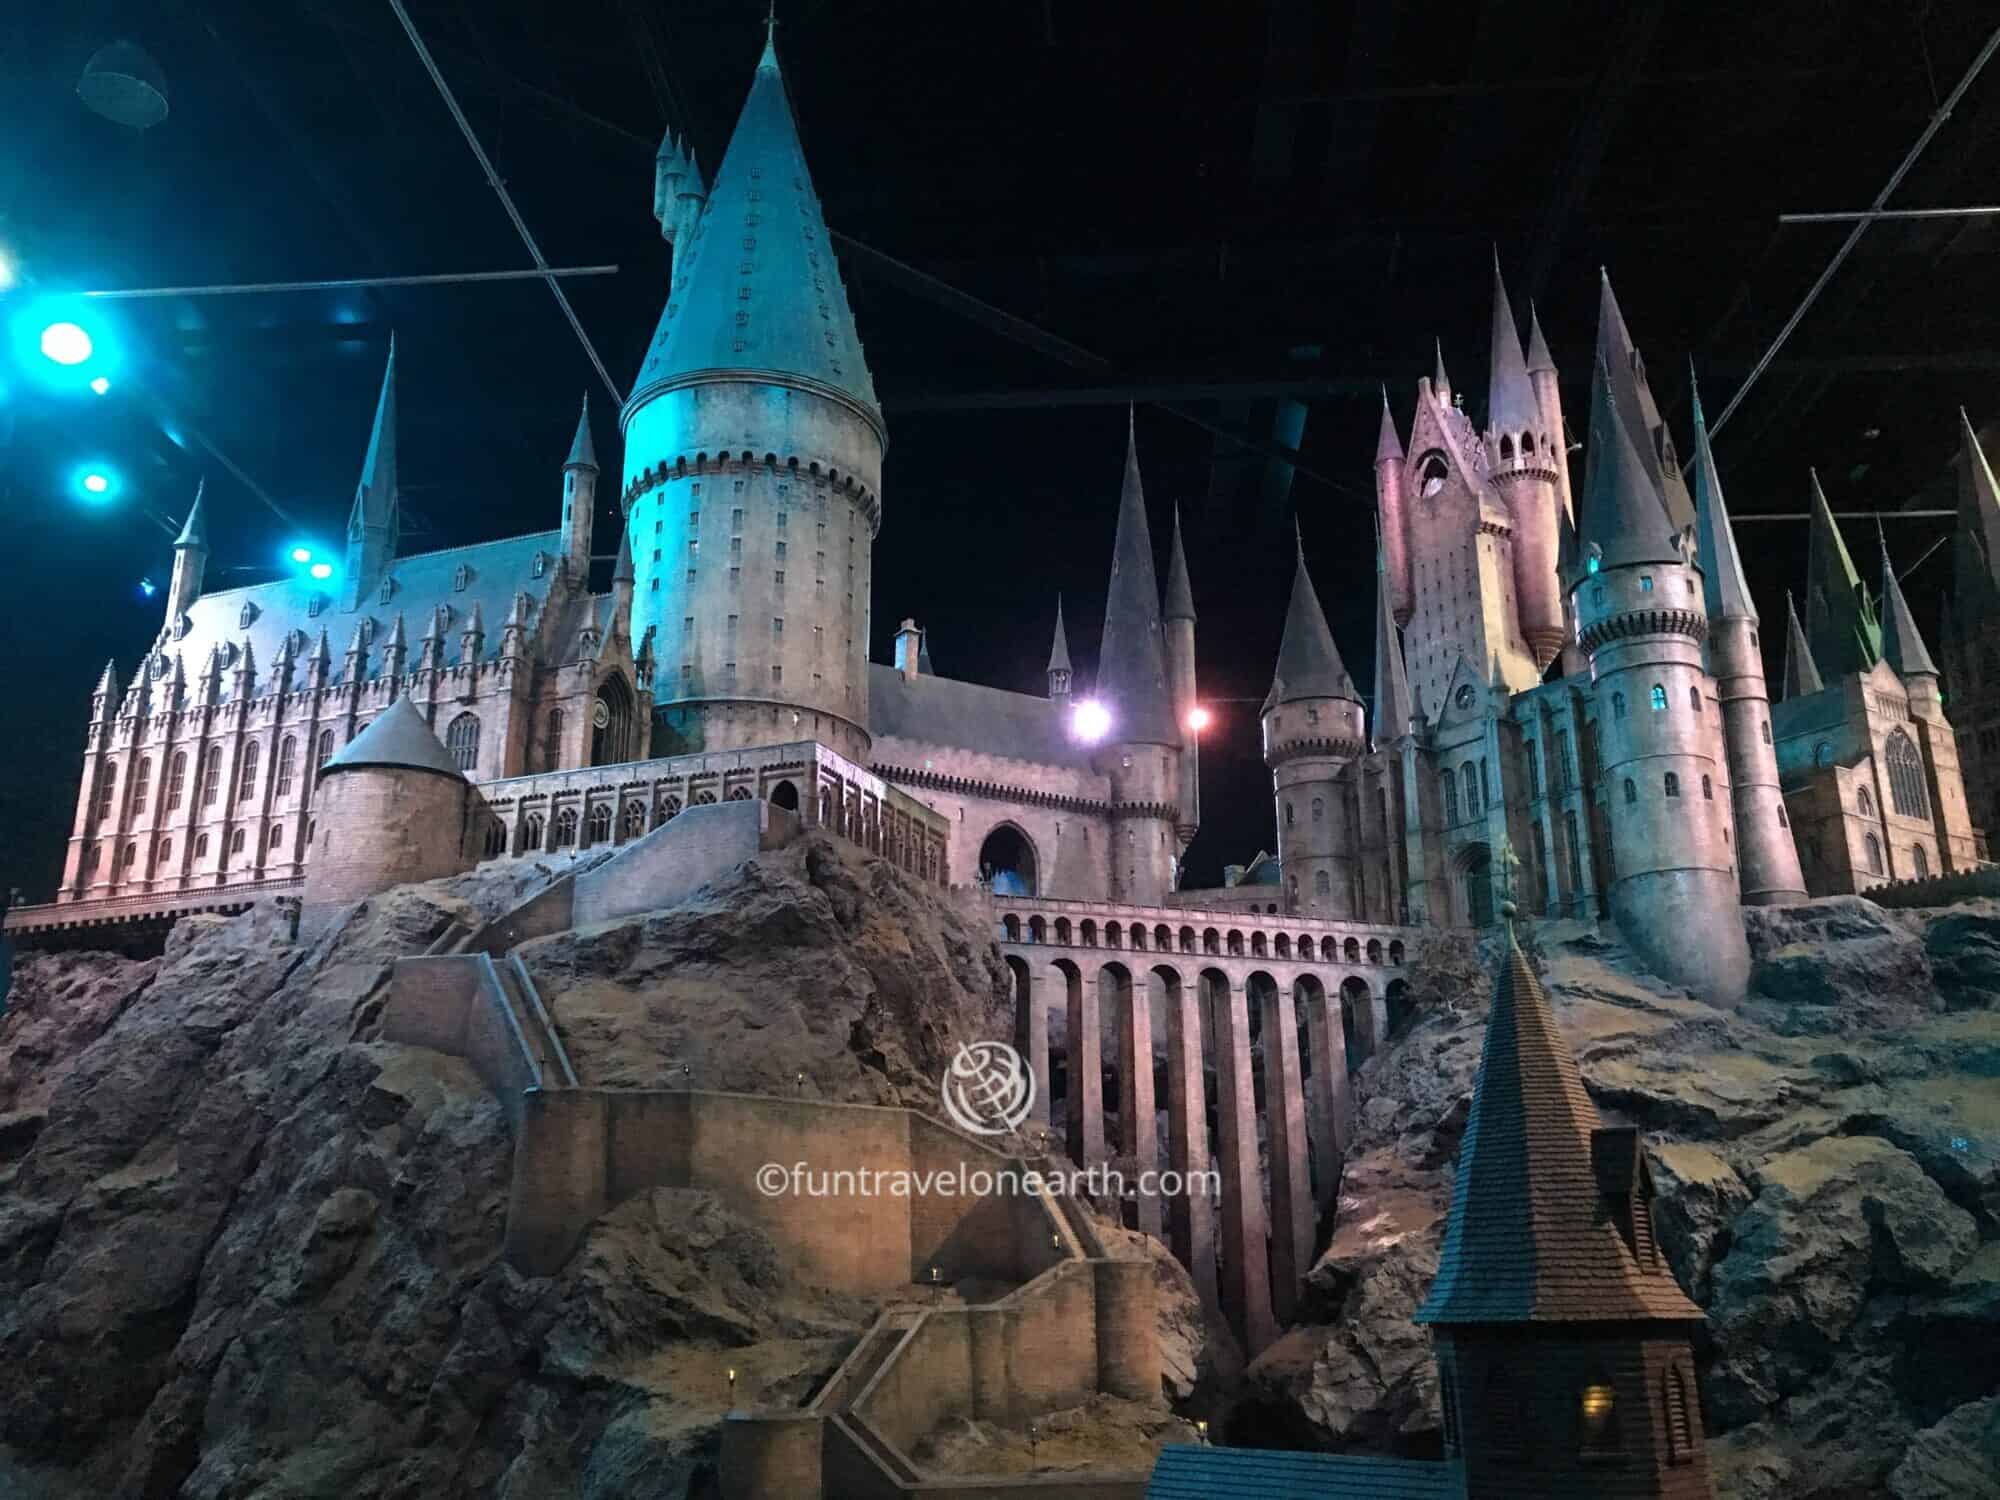 ホグワーツ城1:24, Warner Bros. Studio Tour London - The Making of Harry Potter